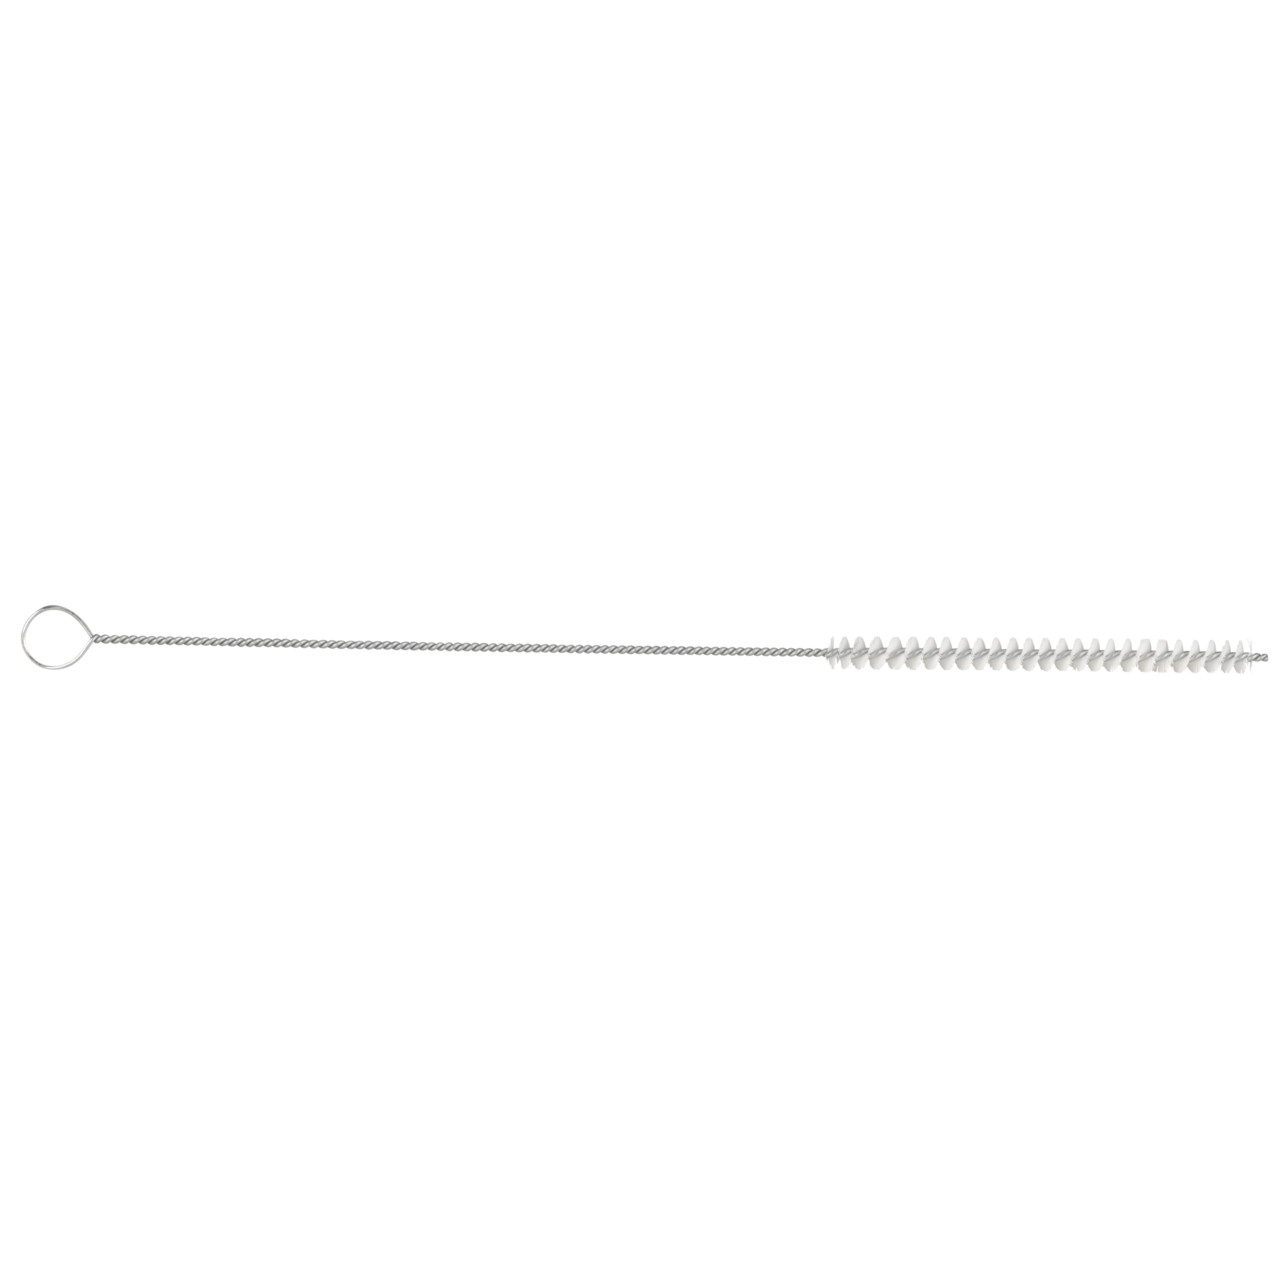 TYROLIT spazzola per tubi cilindrici D-I 10-300 Per uso universale, forma: 18ROODG - (spazzola per tubi cilindrici), Art. 34203572